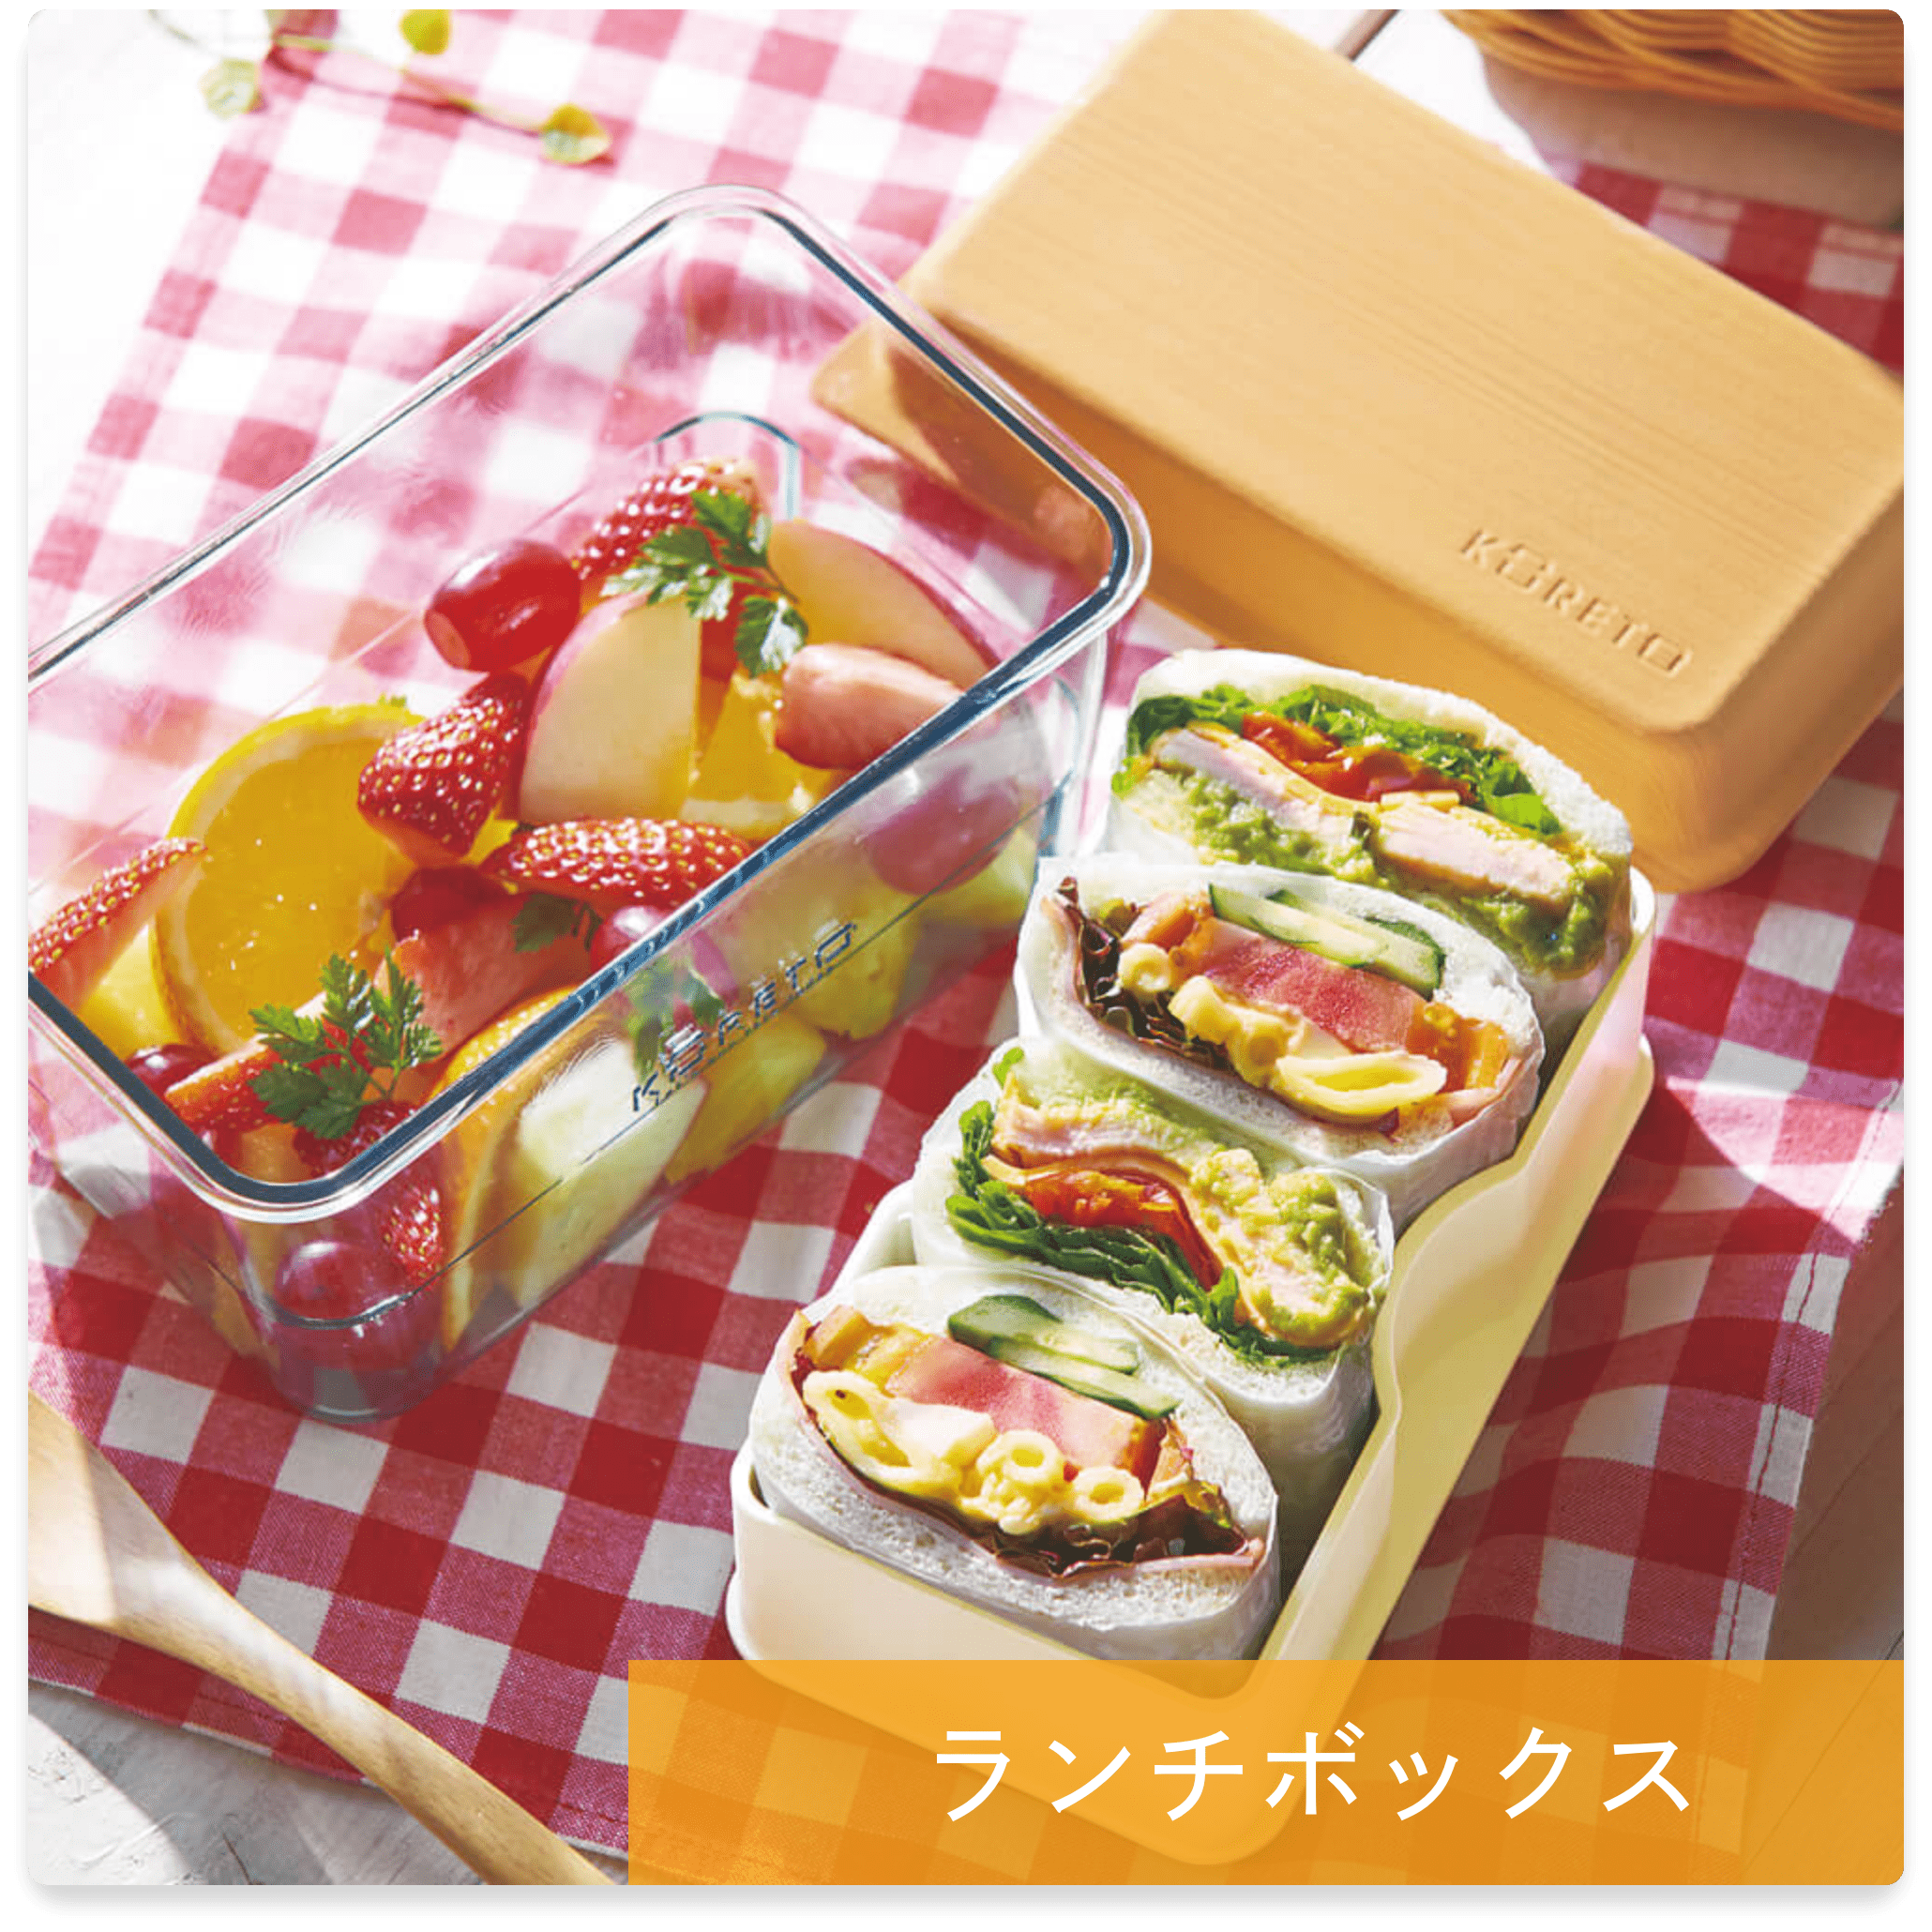 ランチボックスふわもりフタ木風と本体深ガラス風の組み合わせ。サンドイッチとフルーツは、ピクニックにぴったり。